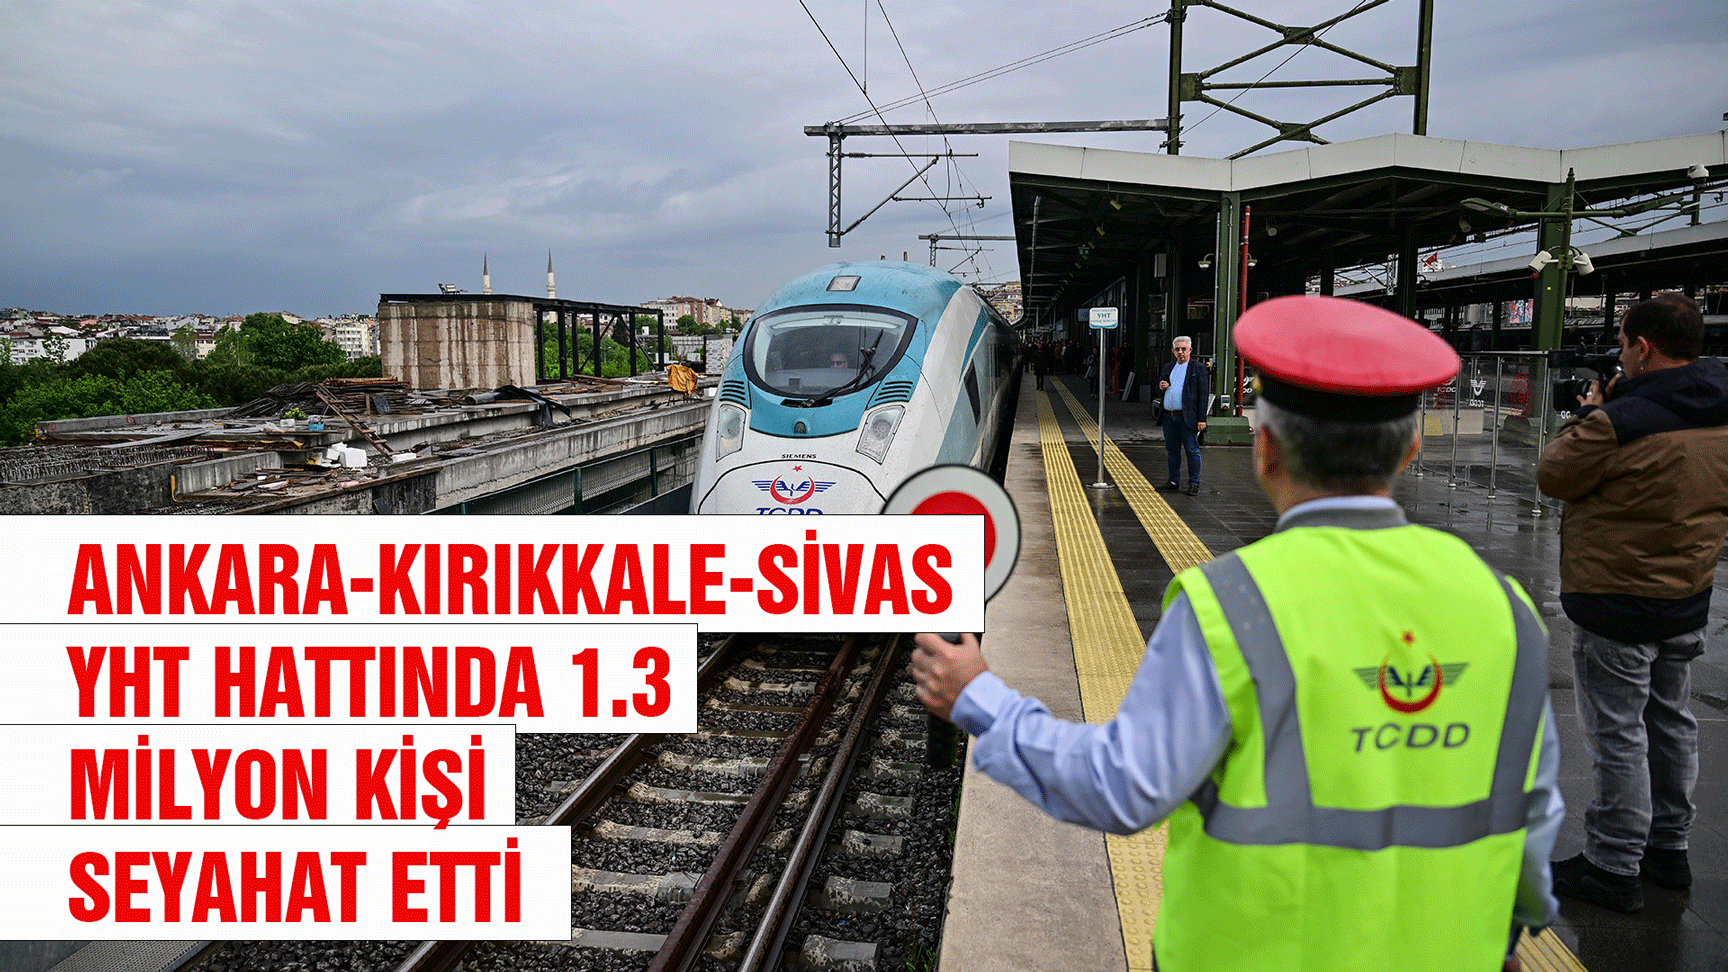 Ankara-Kırıkkale-Sivas YHT hattında 1.3 milyon kişi seyahat etti